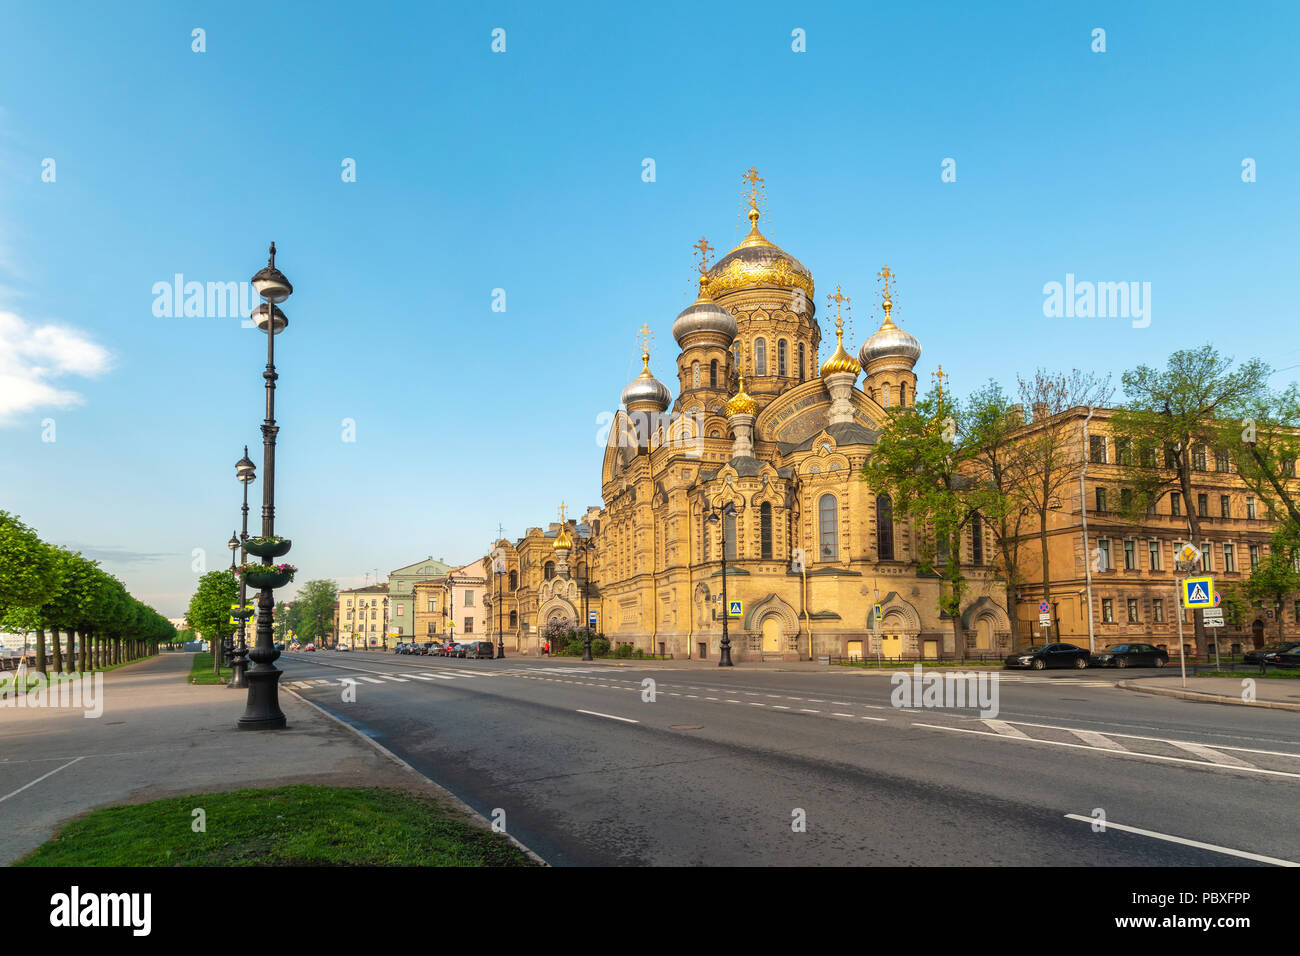 Saint Petersburg city skyline à l'église de l'assomption de Marie, Saint Petersburg Russie Banque D'Images